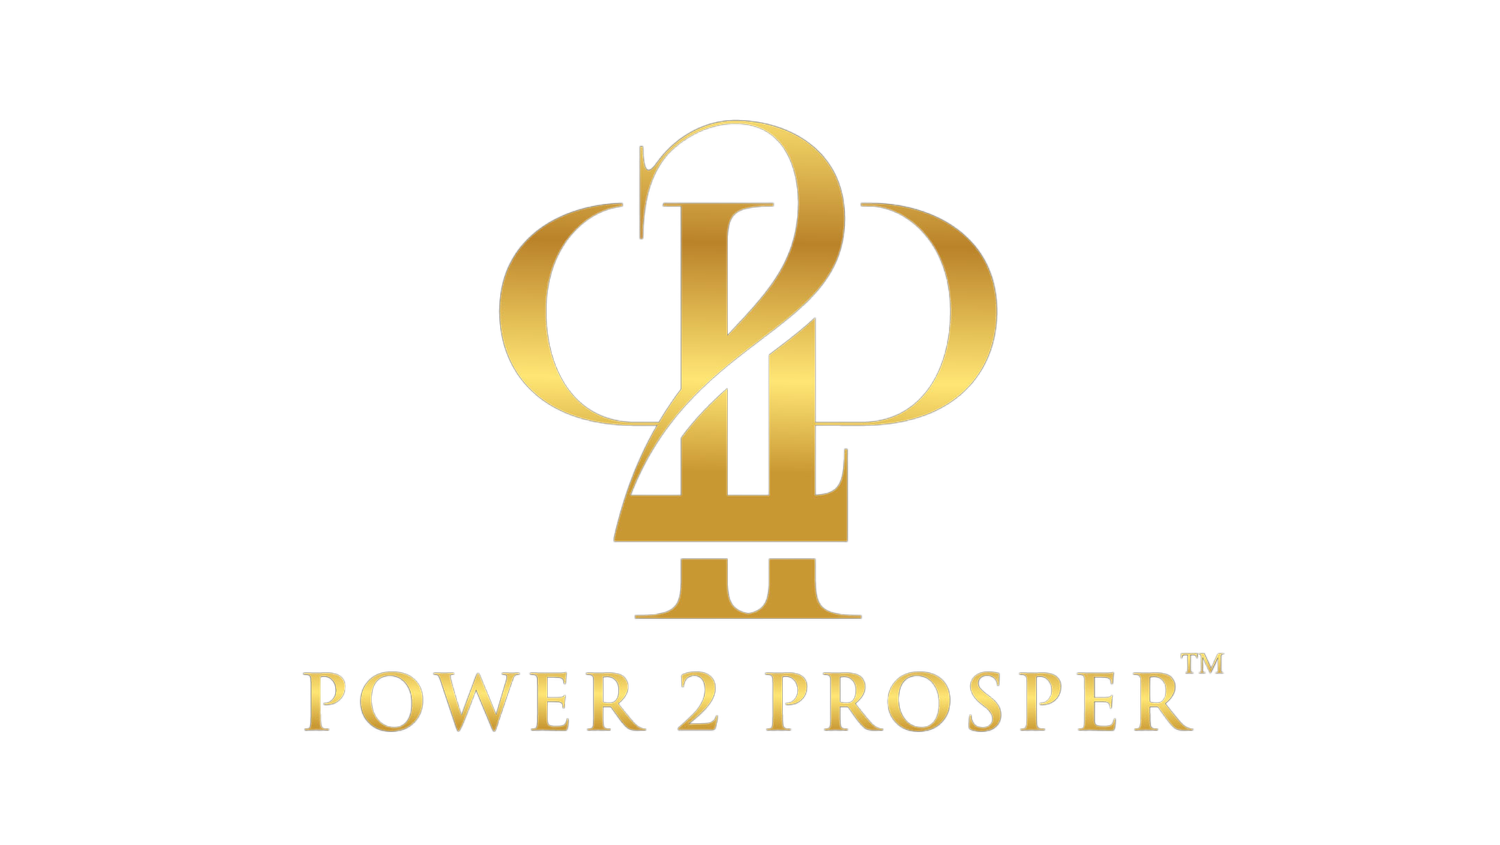 Power 2 Prosper